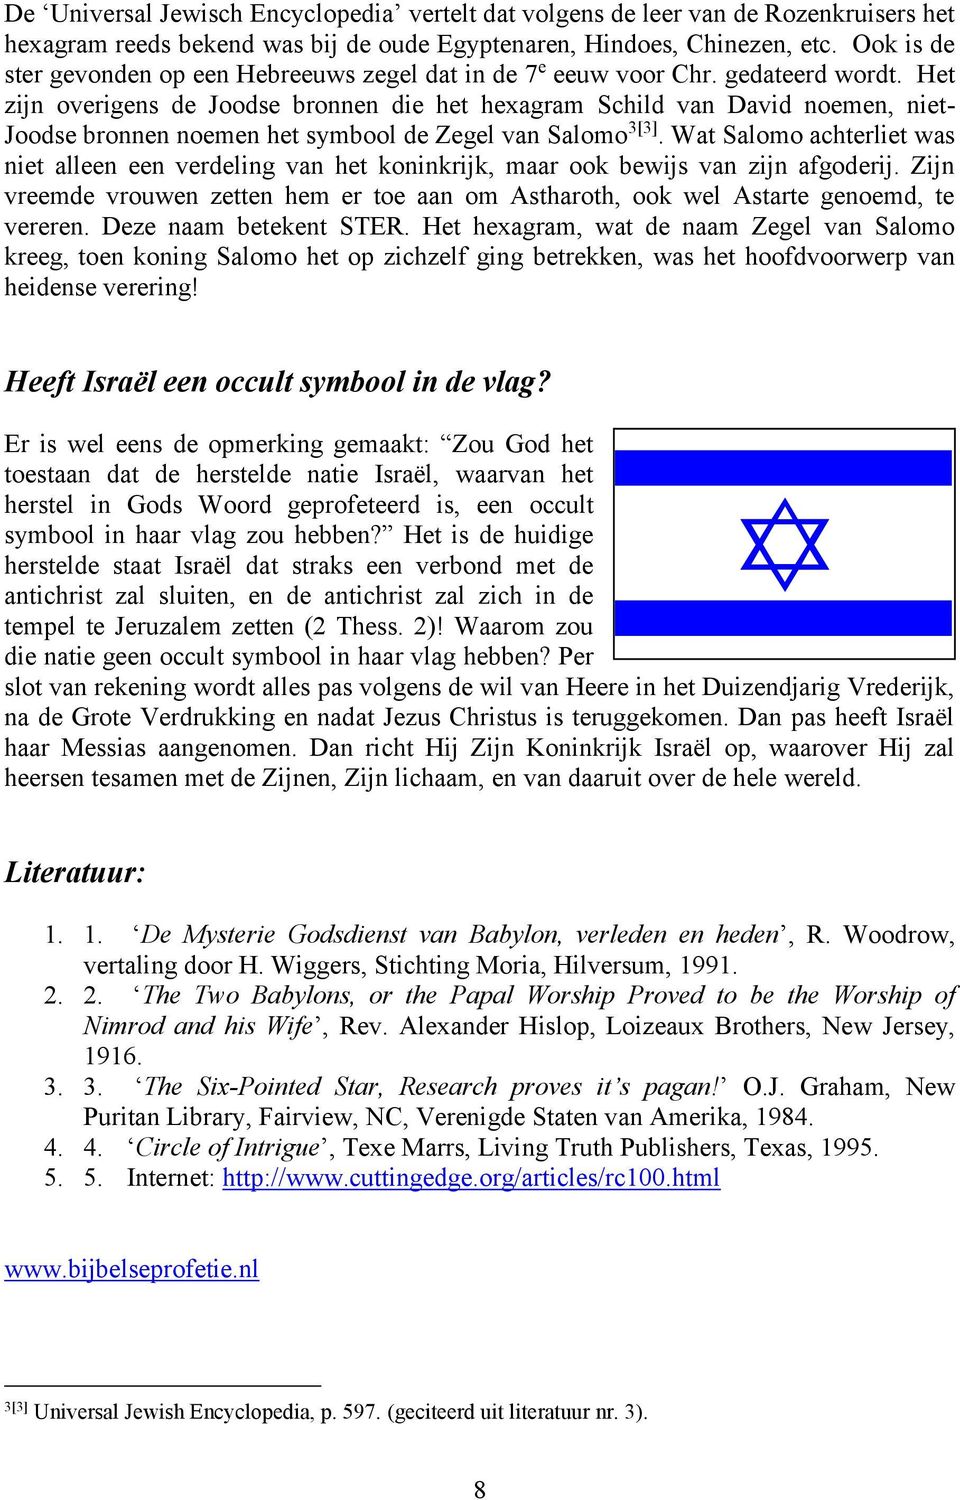 Het zijn overigens de Joodse bronnen die het hexagram Schild van David noemen, niet- Joodse bronnen noemen het symbool de Zegel van Salomo 3[3].